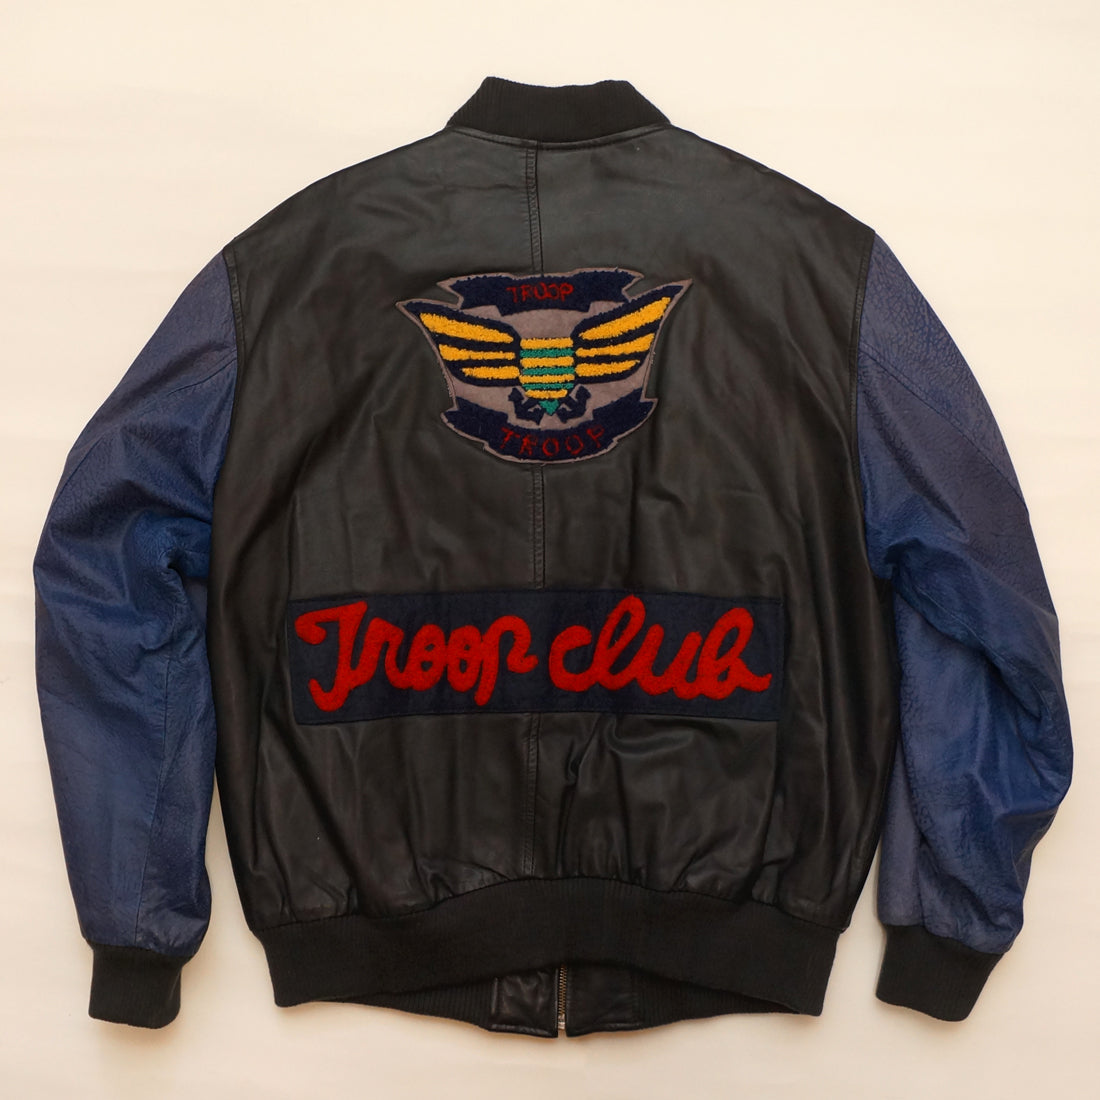 Vintage Leather "TROOP CLUB" Troop Jacket